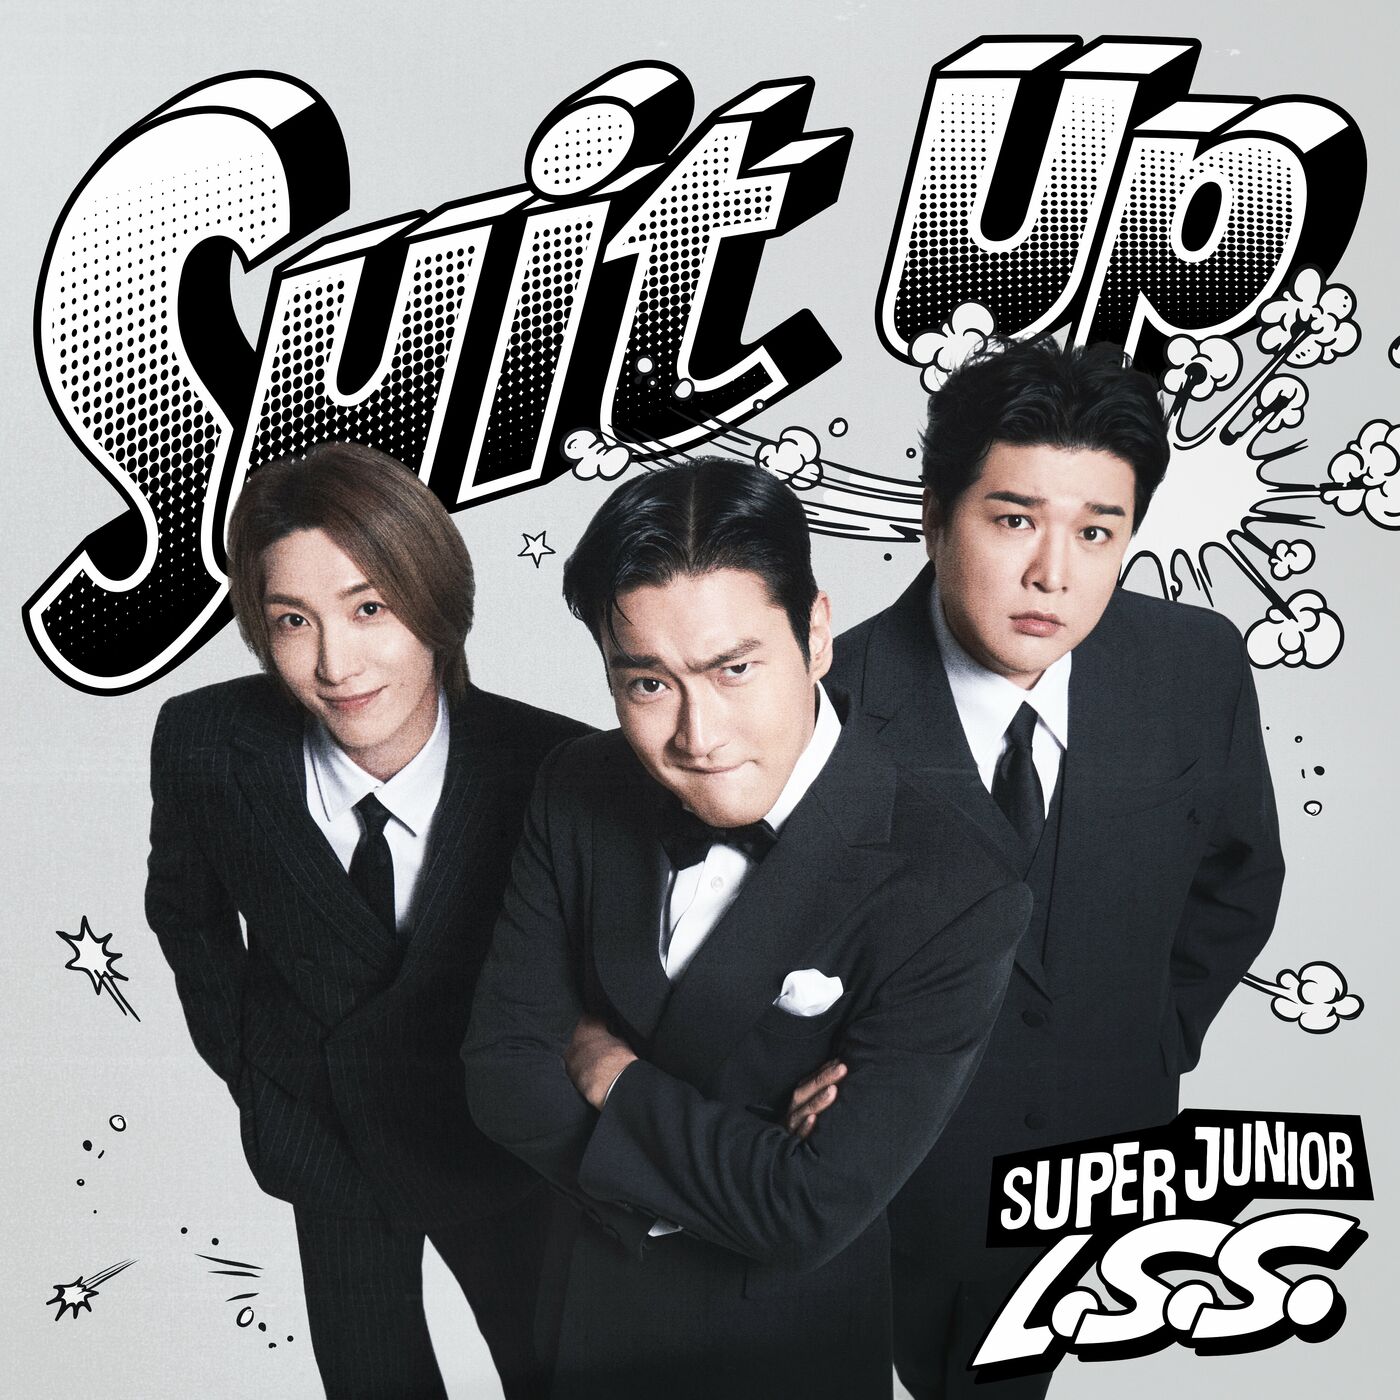 SUPER JUNIOR-L.S.S. - Suit Up